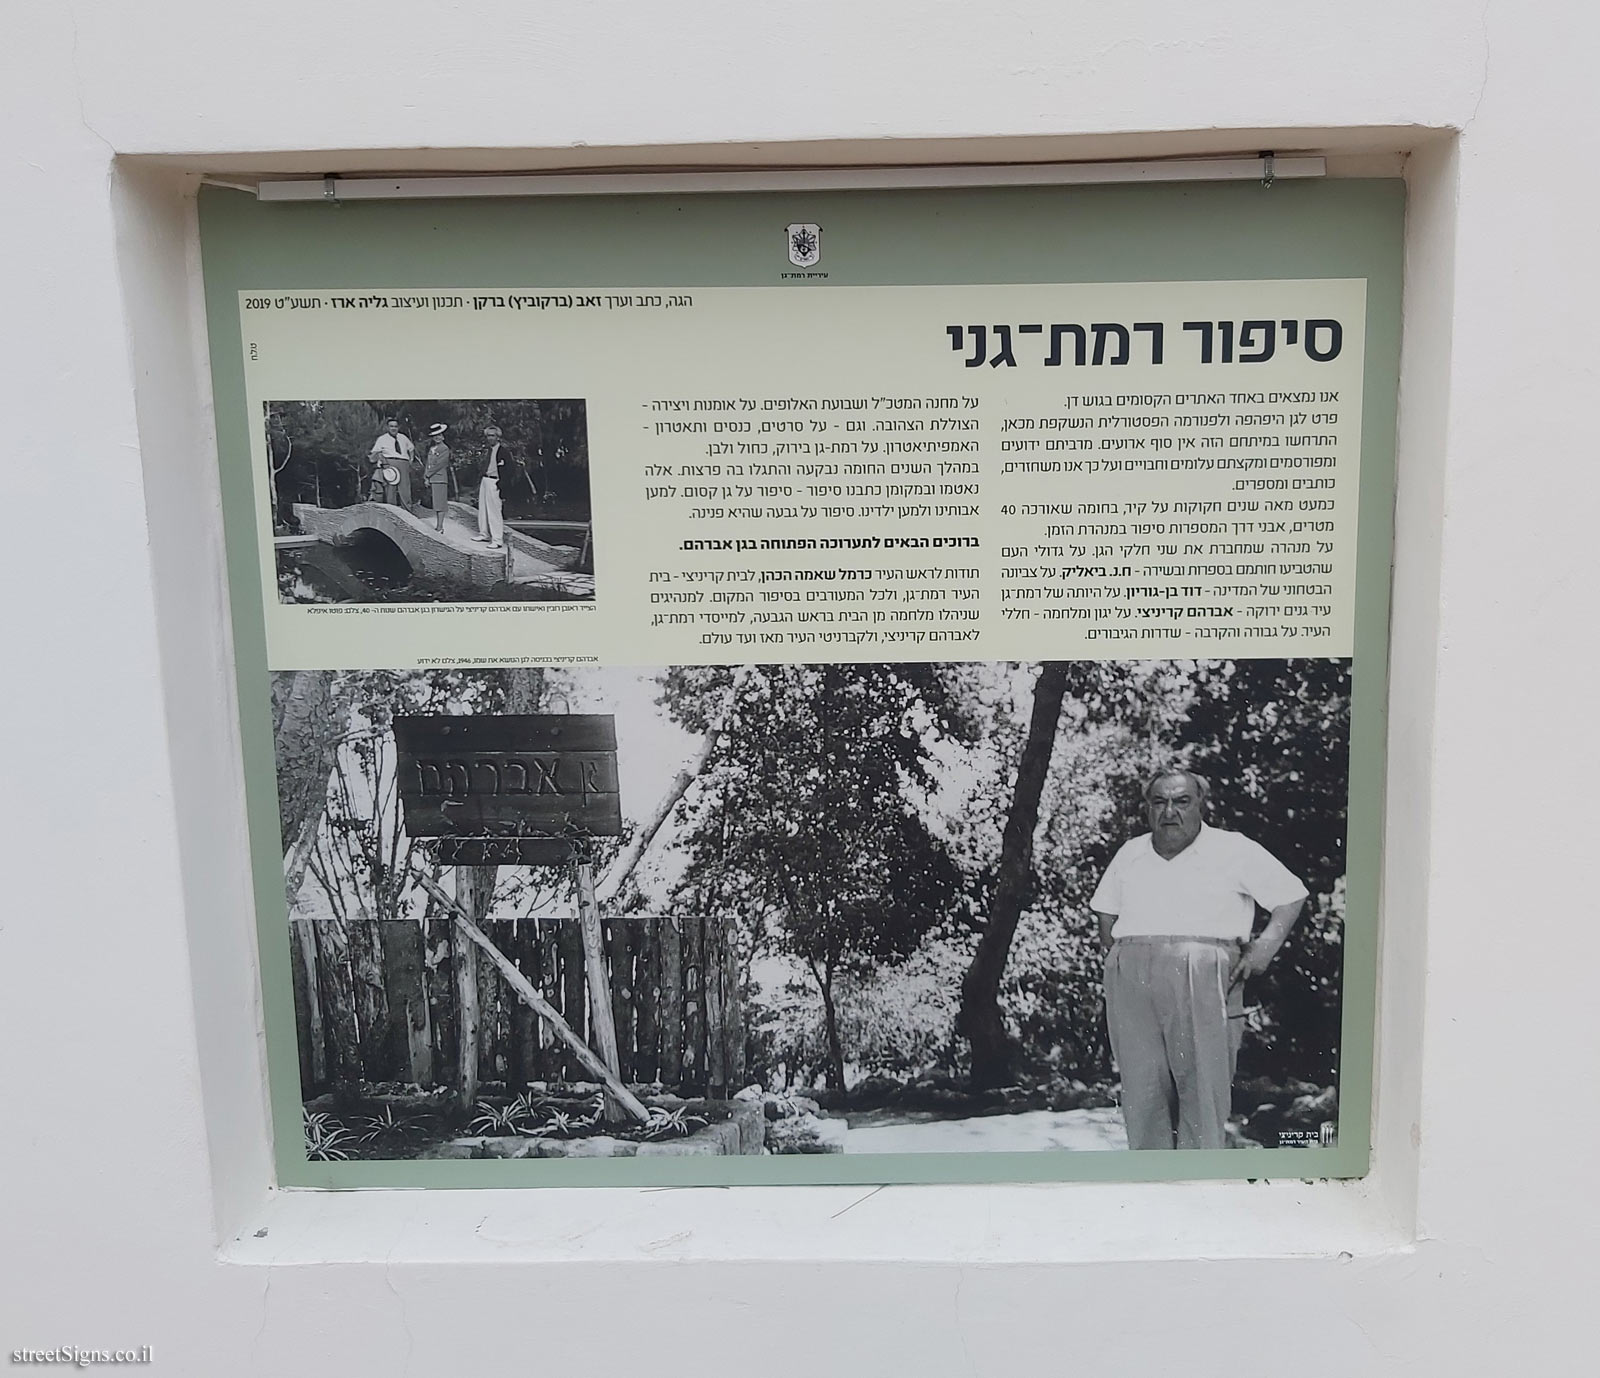 Ramat Gan - Open Exhibition - The story of Ramat Gan